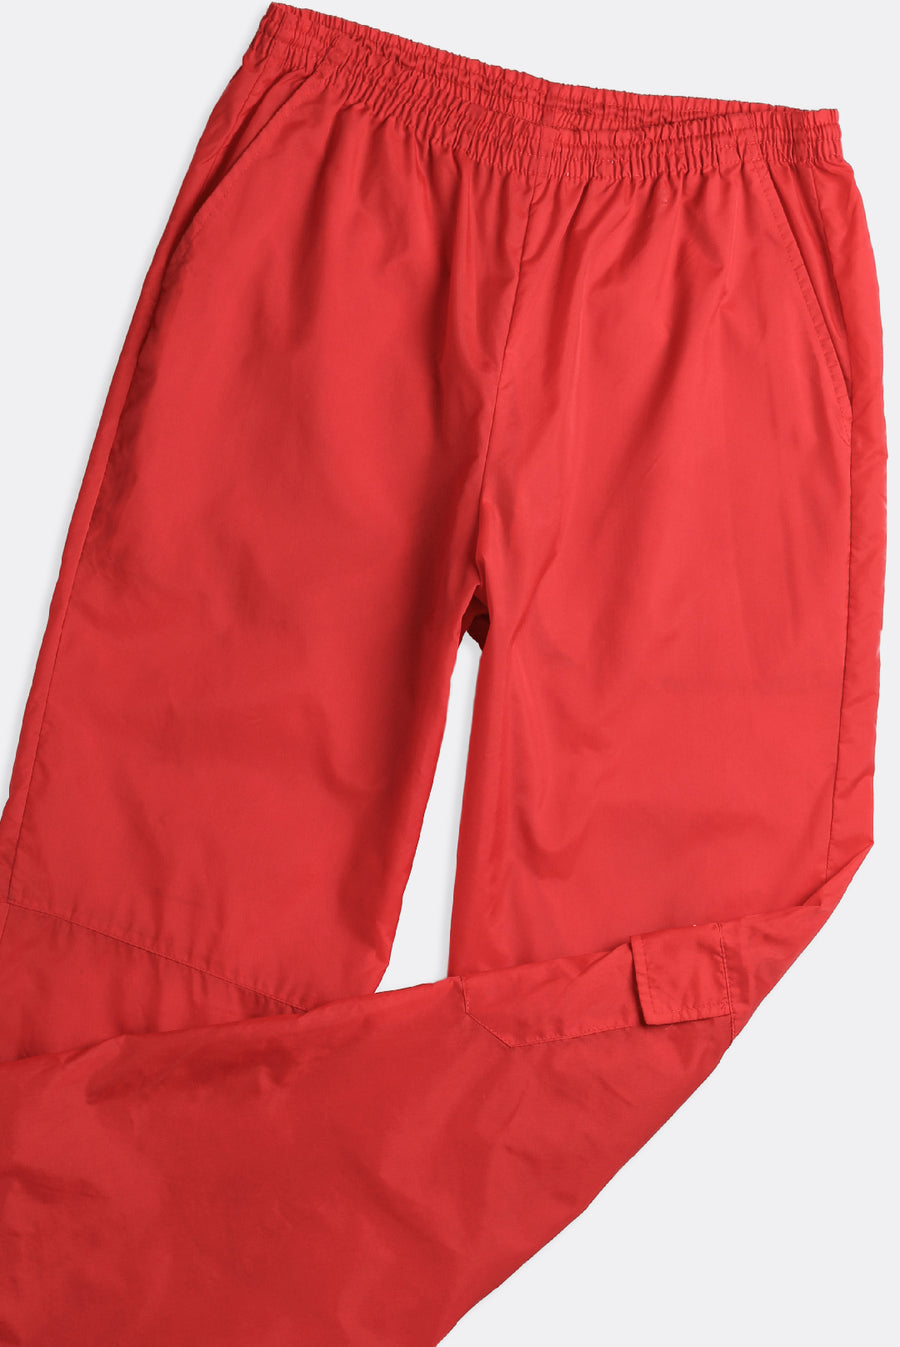 Vintage Spaulding Windbreaker Pants - L